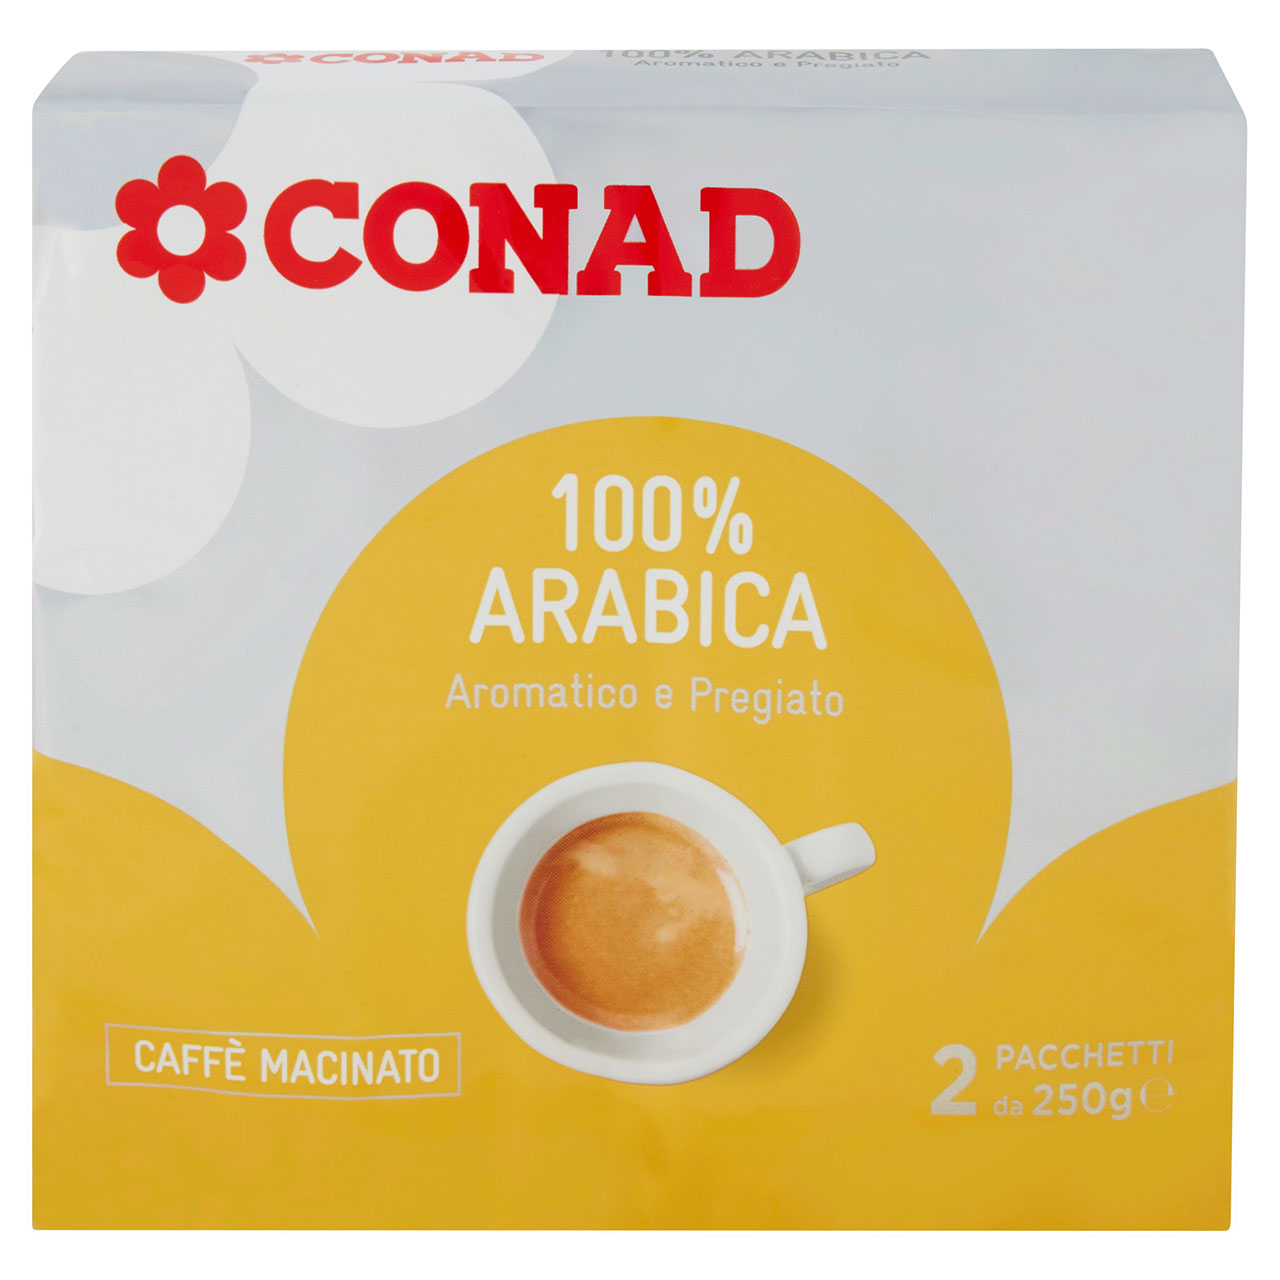 Caffè Arabica Aromatico Pregiato Macinato Conad